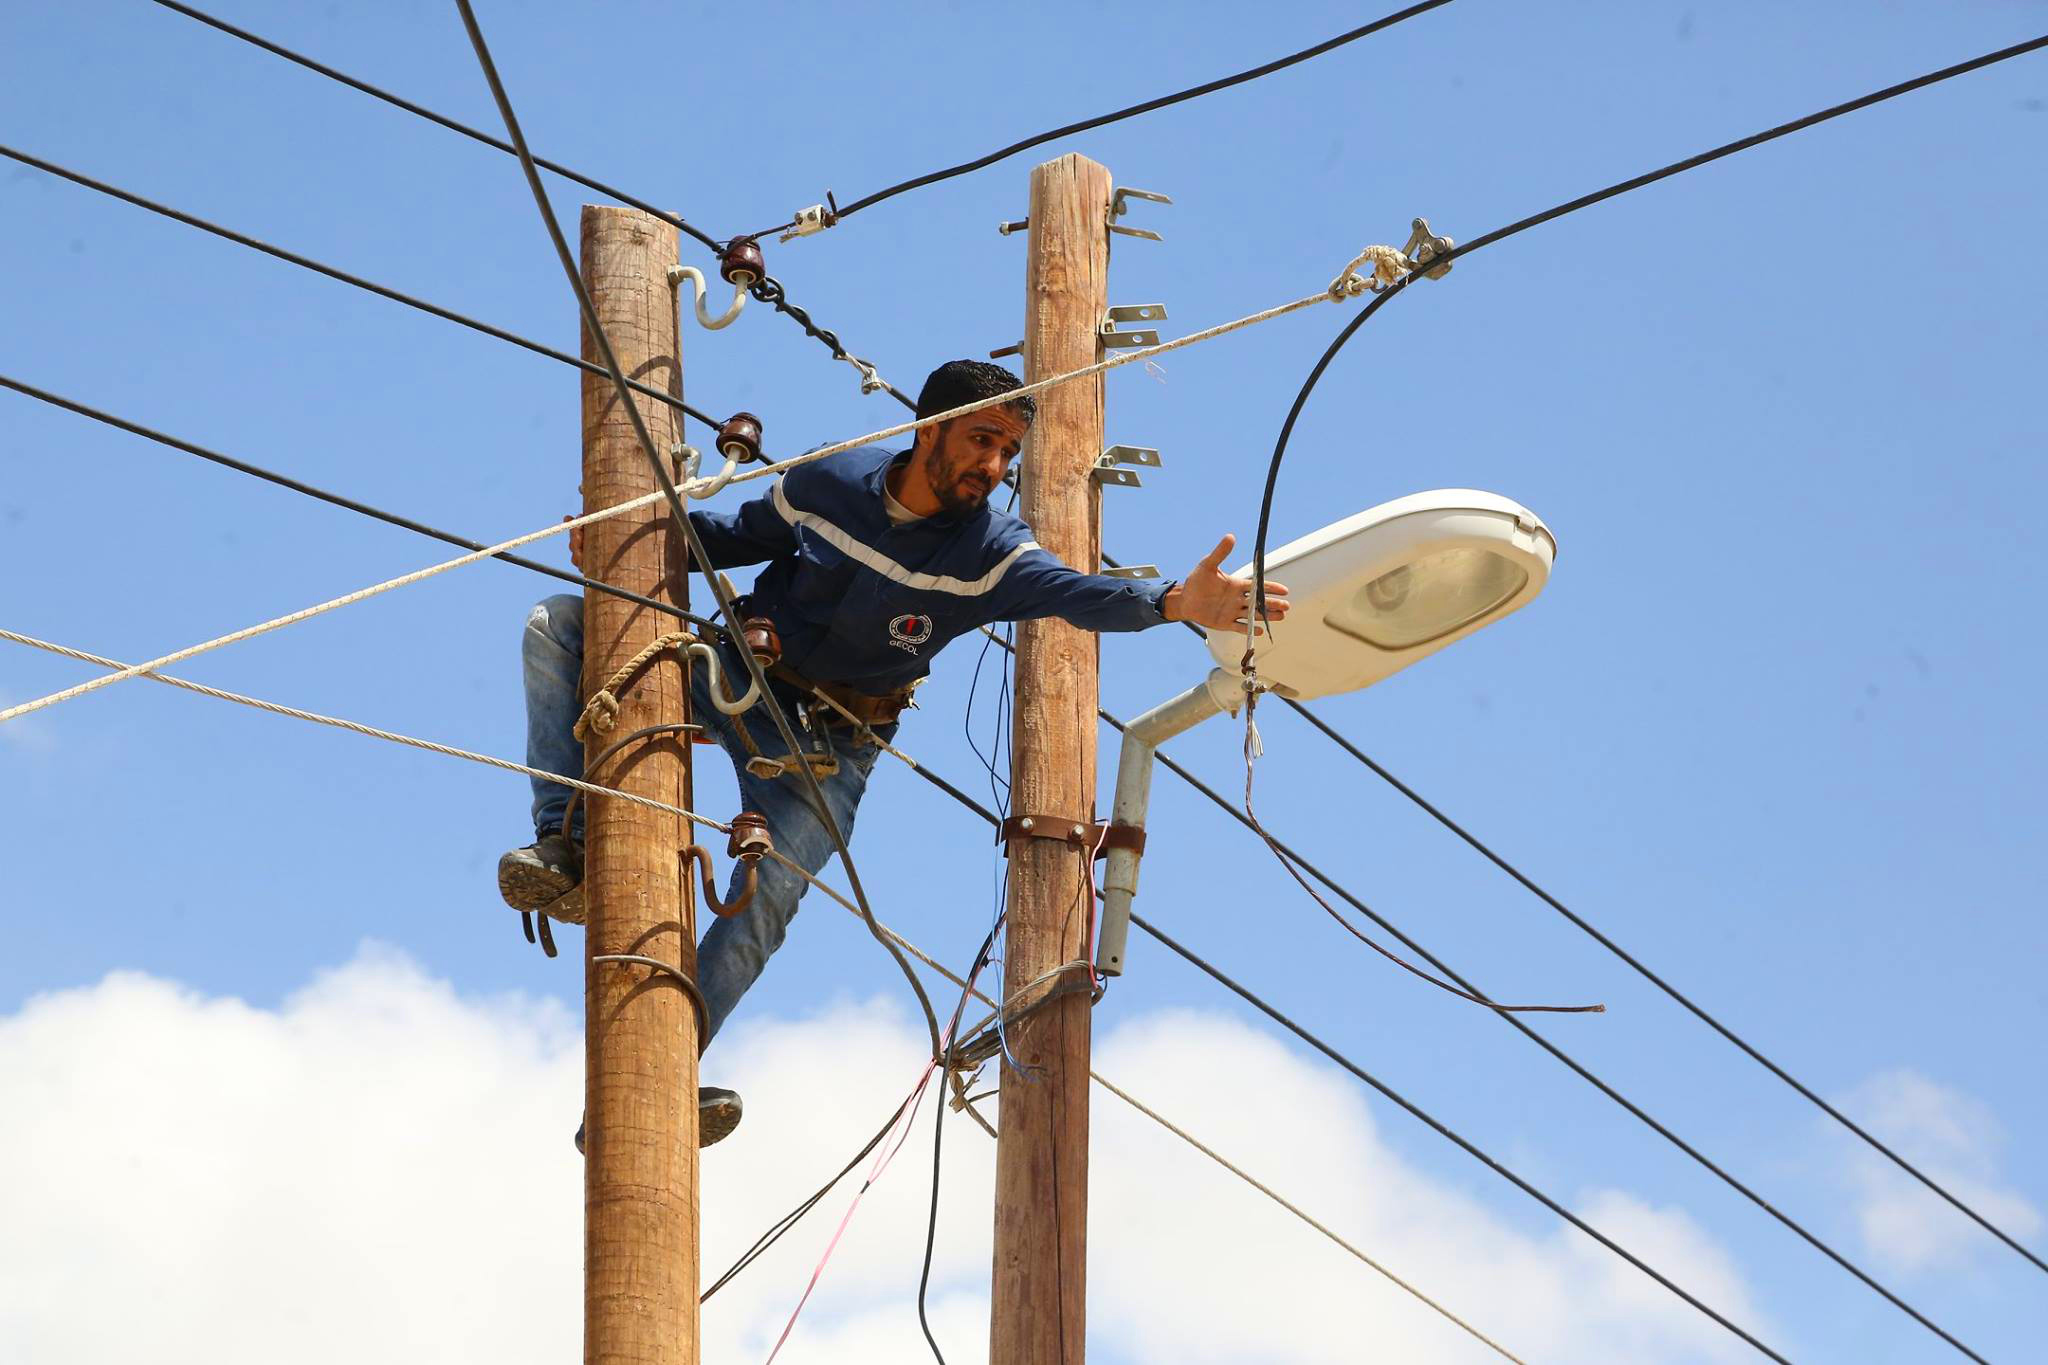 “وزارة الكهرباء المصرية” مواعيد قطع الكهرباء في القاهرة 2023 وفق خطة تخفيف الاحمال في مصر